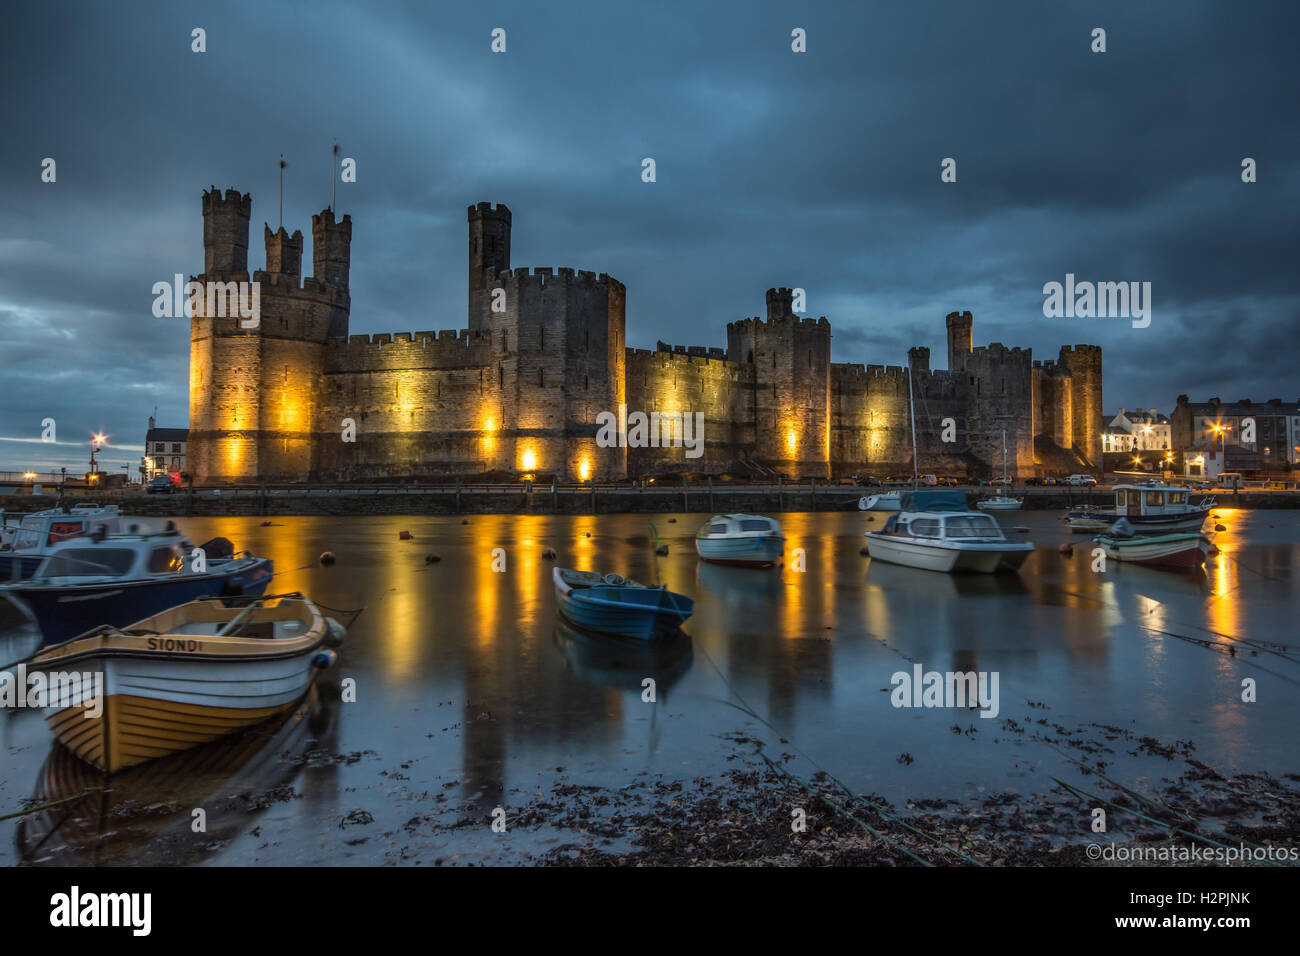 Castillo de Caernarfon iluminado en la noche, Inglaterra, Reino Unido. Foto de stock